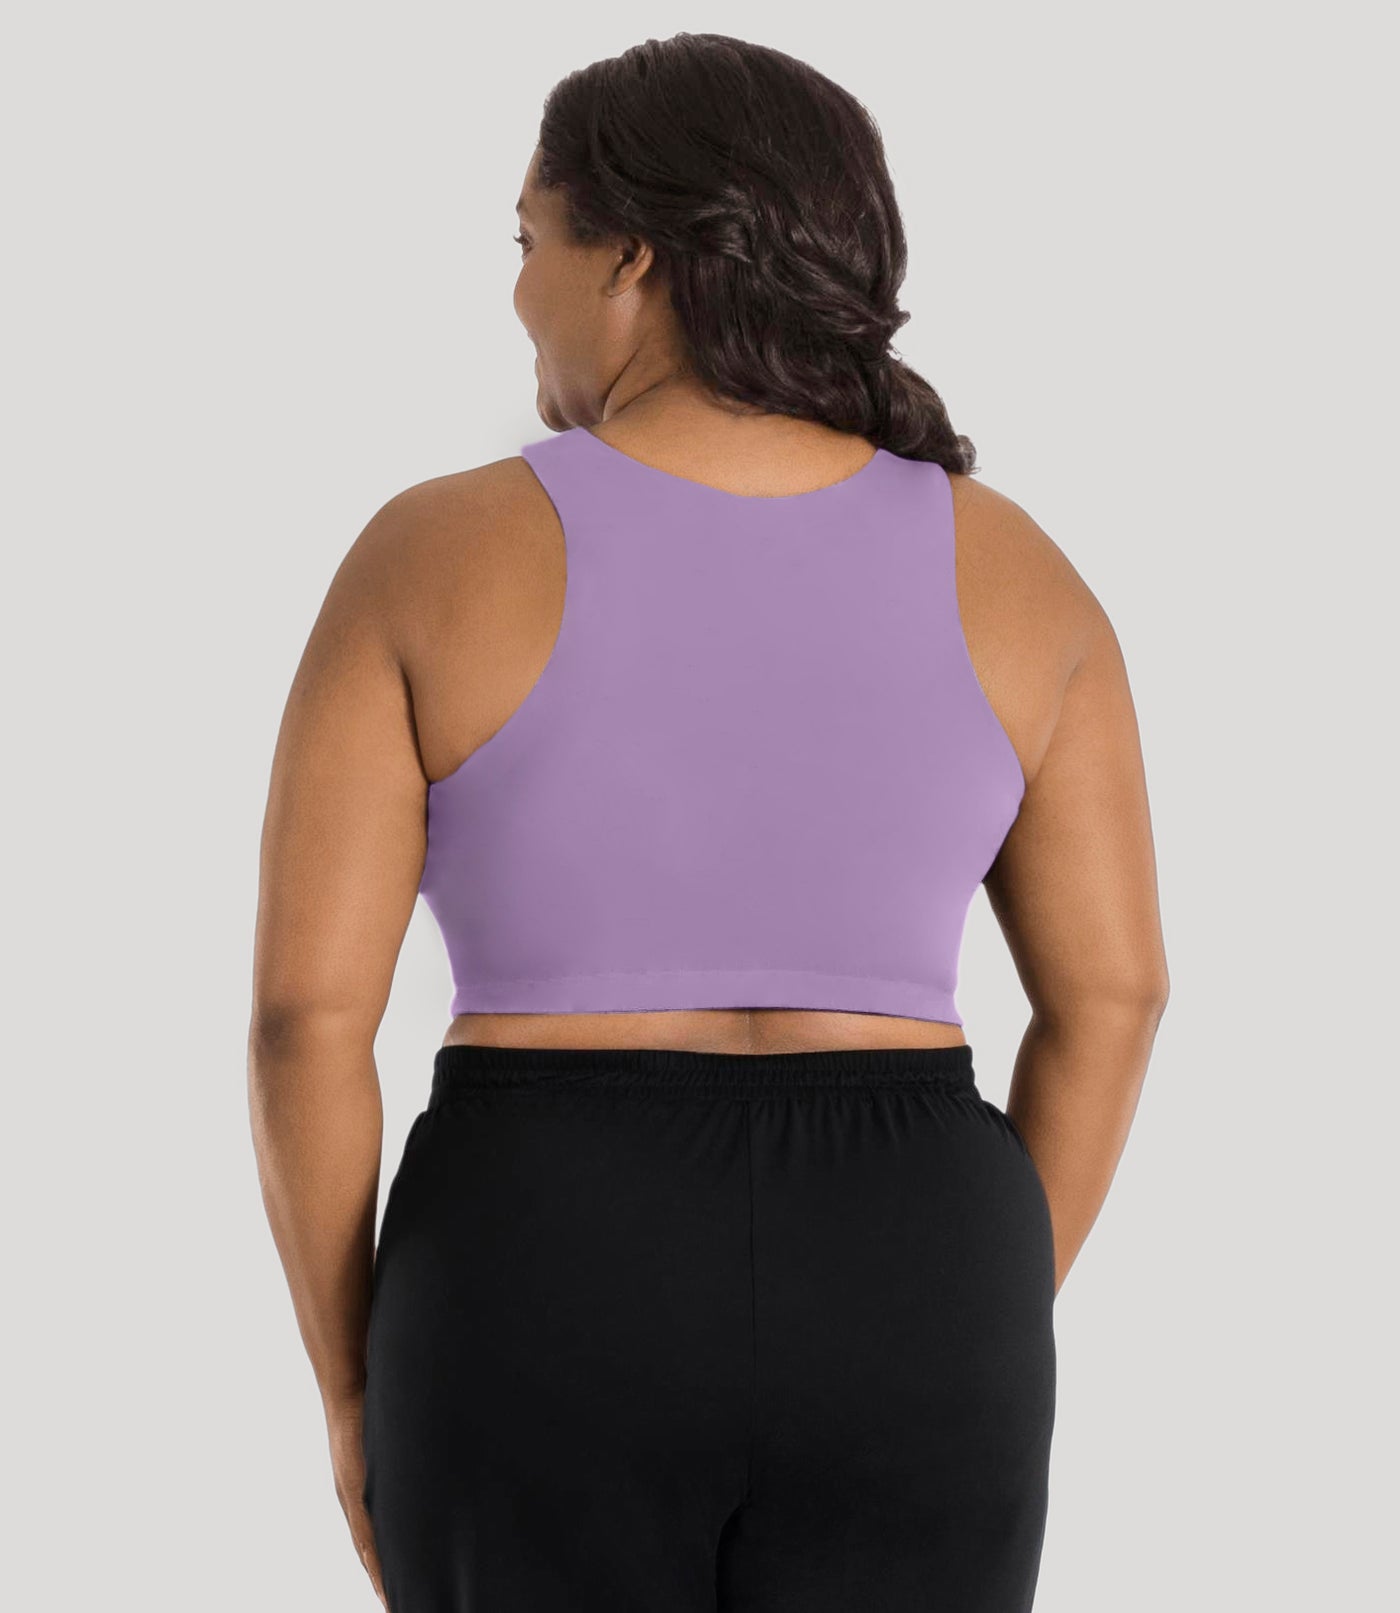 Plus size model, facing back, wearing stretch naturals full fit V-neck bra in color lavender.